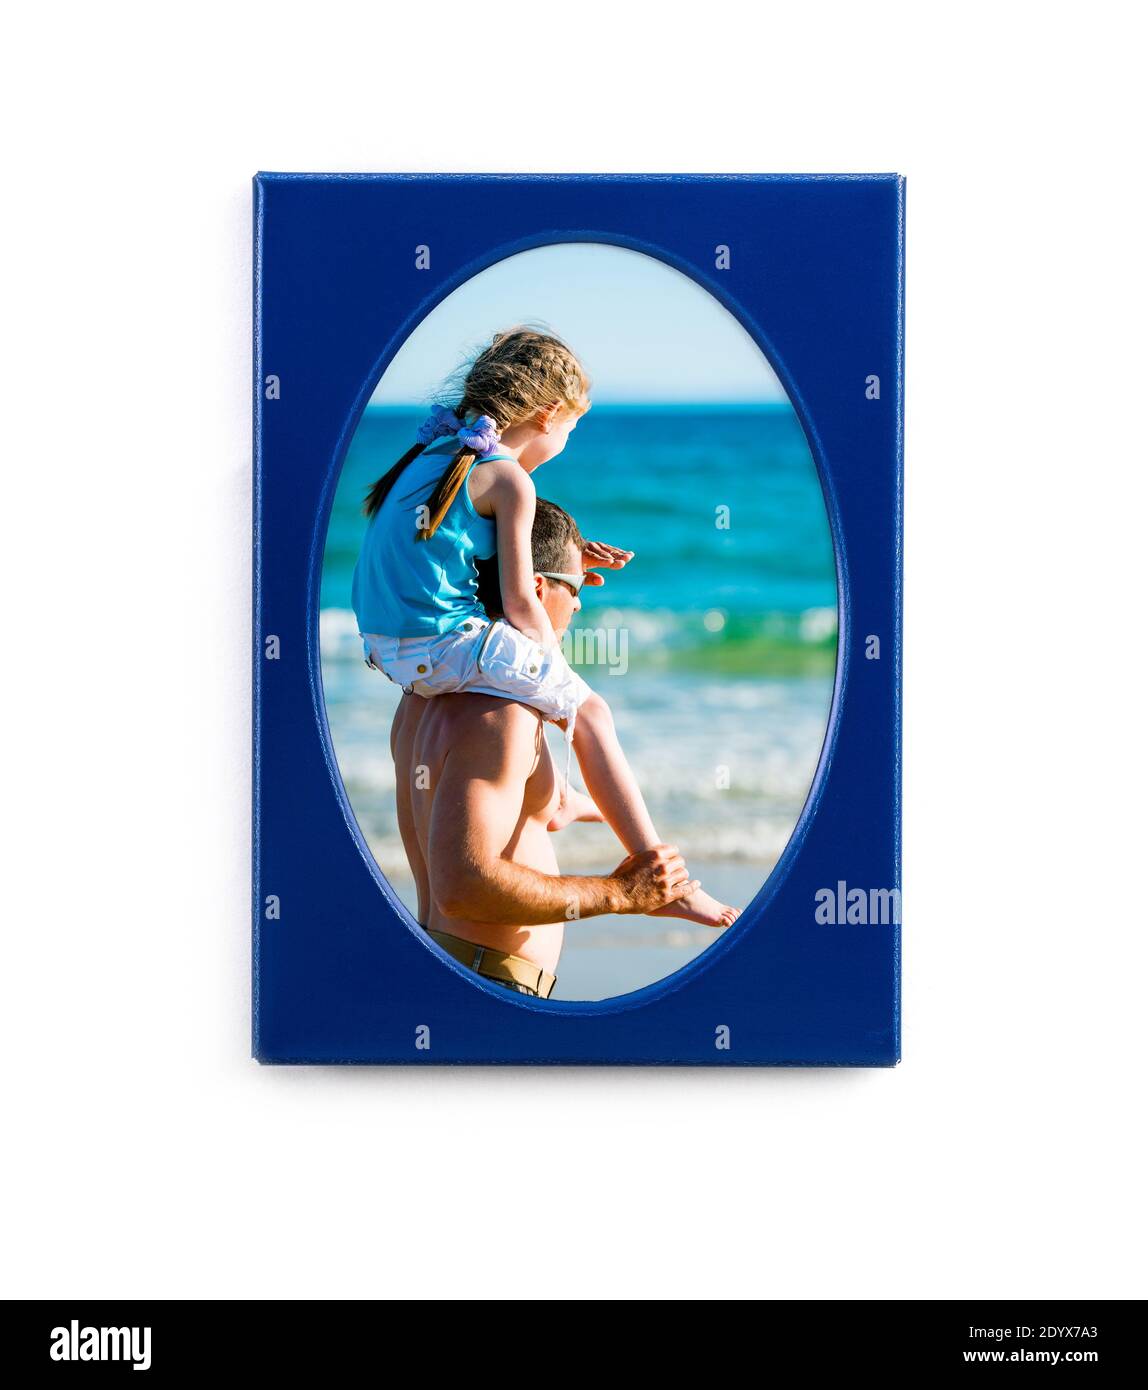 Magnifique photo personnelle dans un cadre photo ovale bleu isolé arrière-plan blanc Banque D'Images